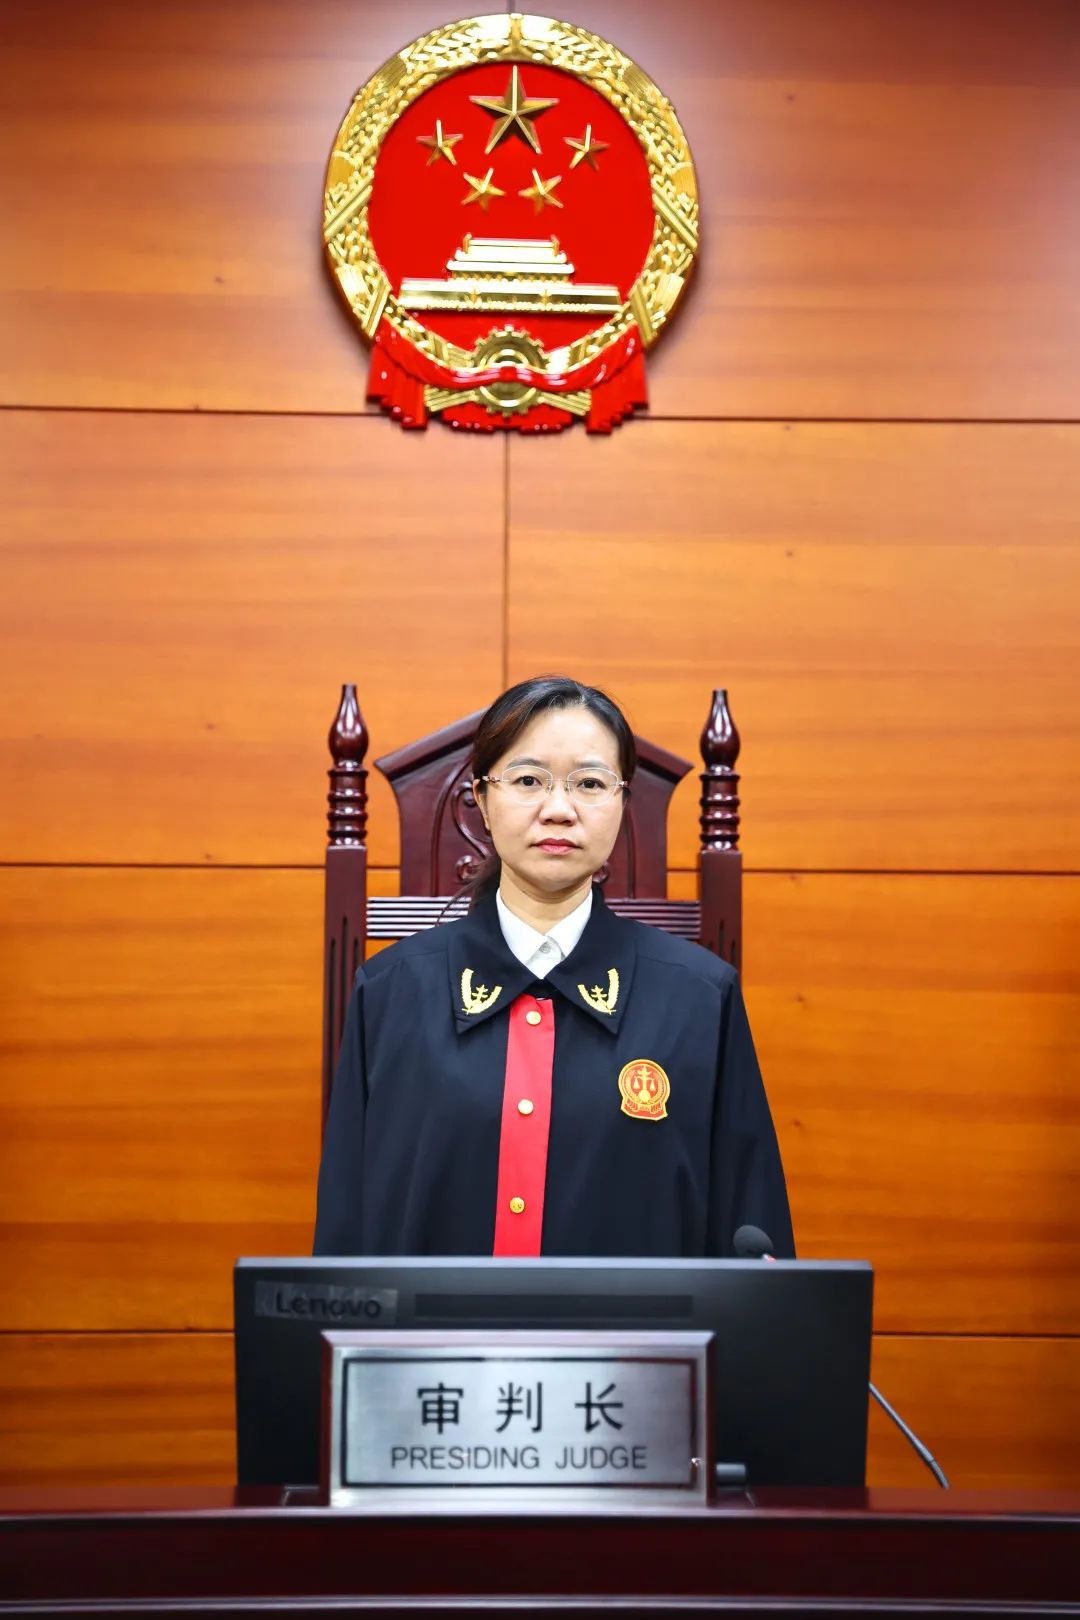 天津日报守护正义的天平记天津市第二中级人民法院三级高级法官夏维娜